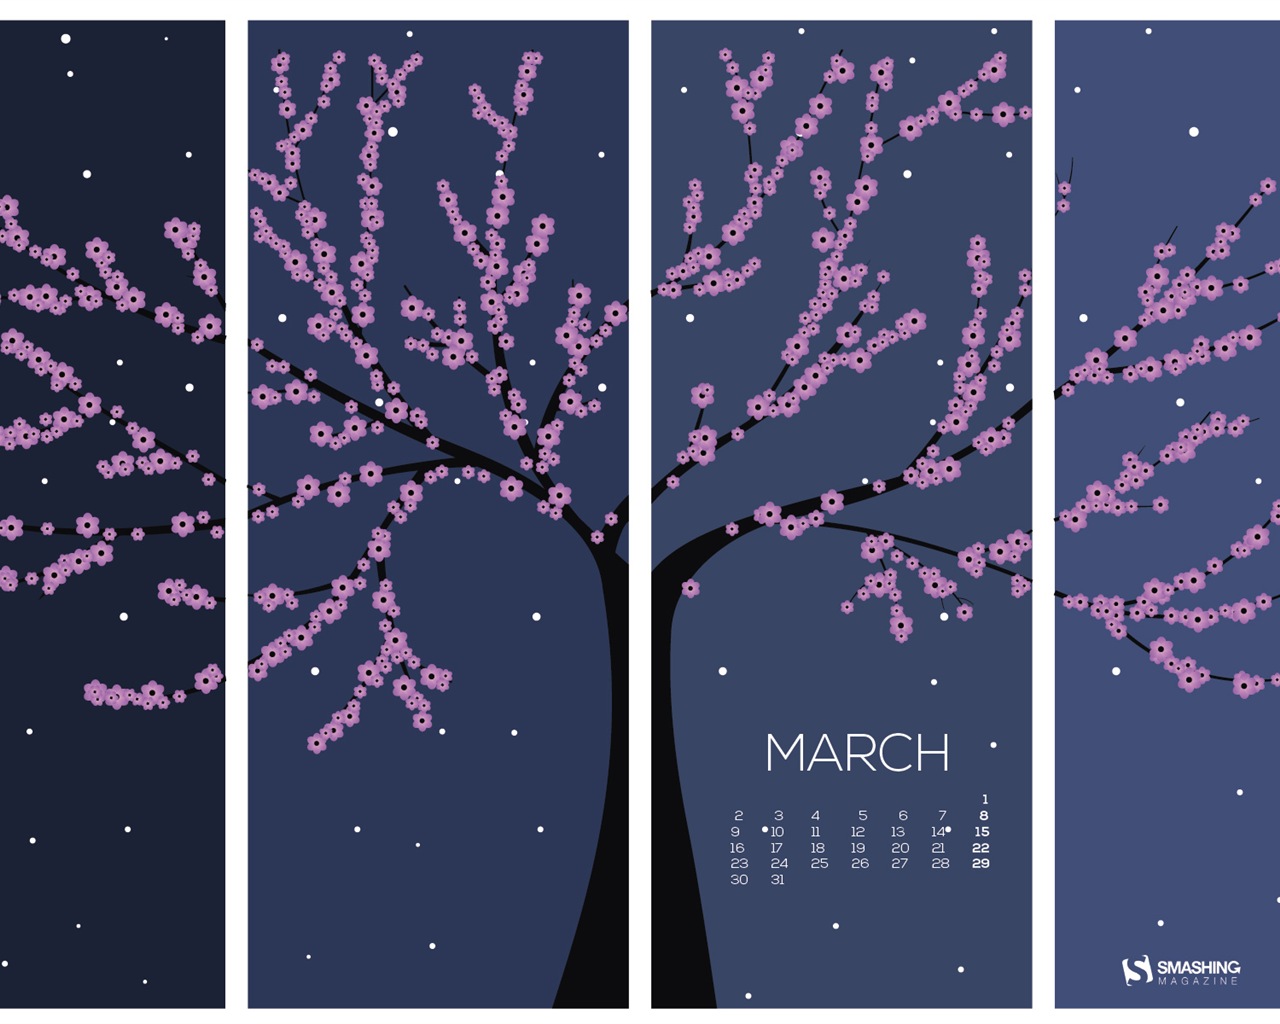 March 2015 Calendar wallpaper (2) #15 - 1280x1024